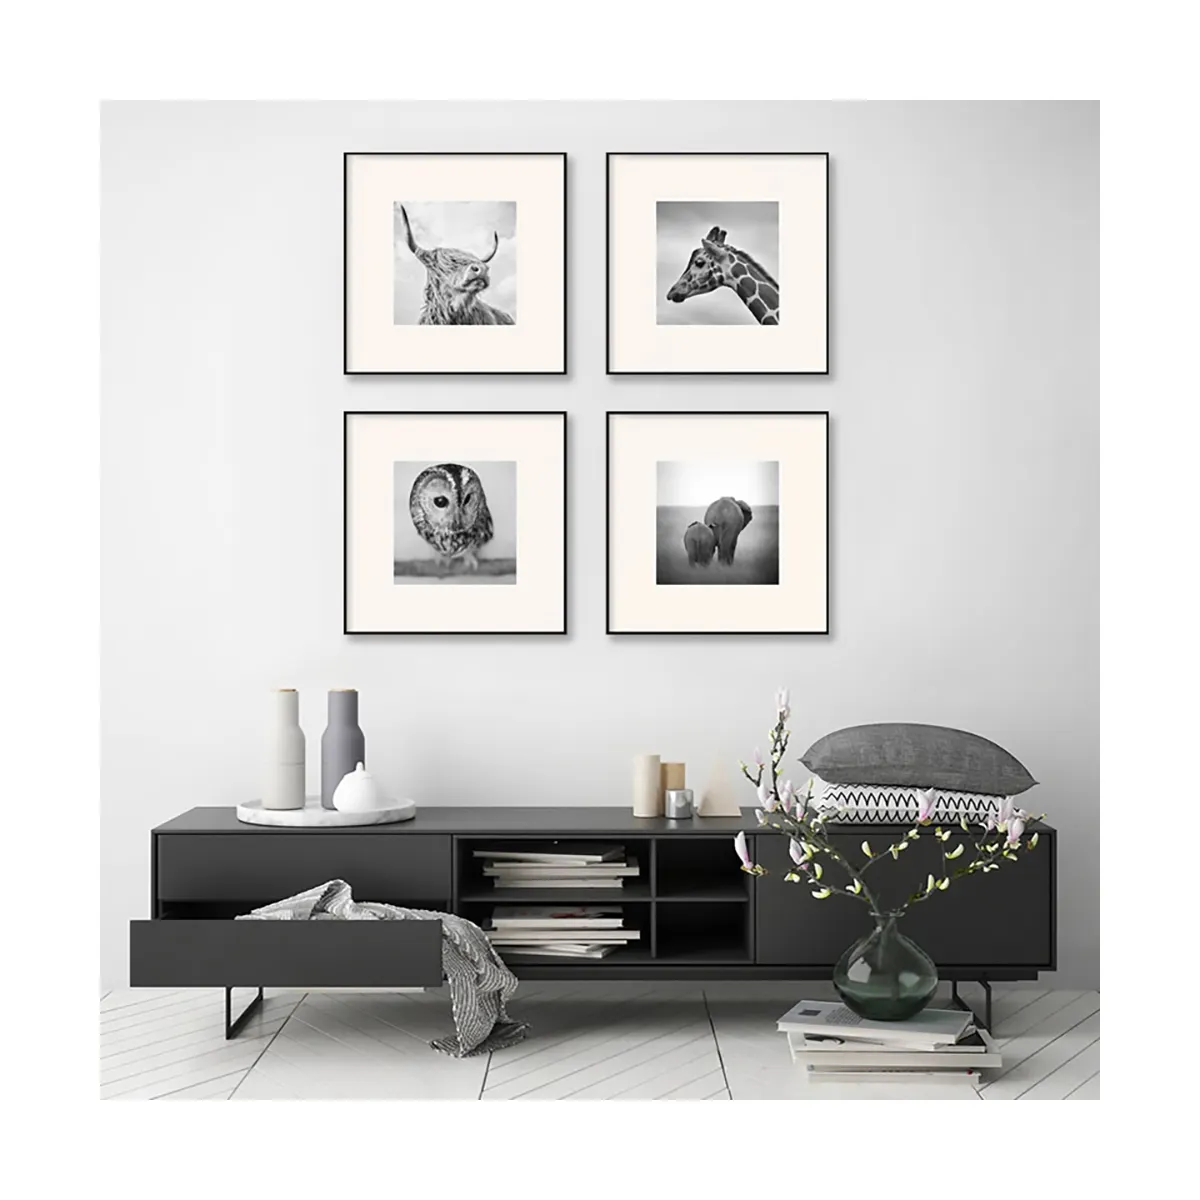 Noir et blanc peinture photographie art animal photo peinture salon rétro combinaison suspendu peinture mur art